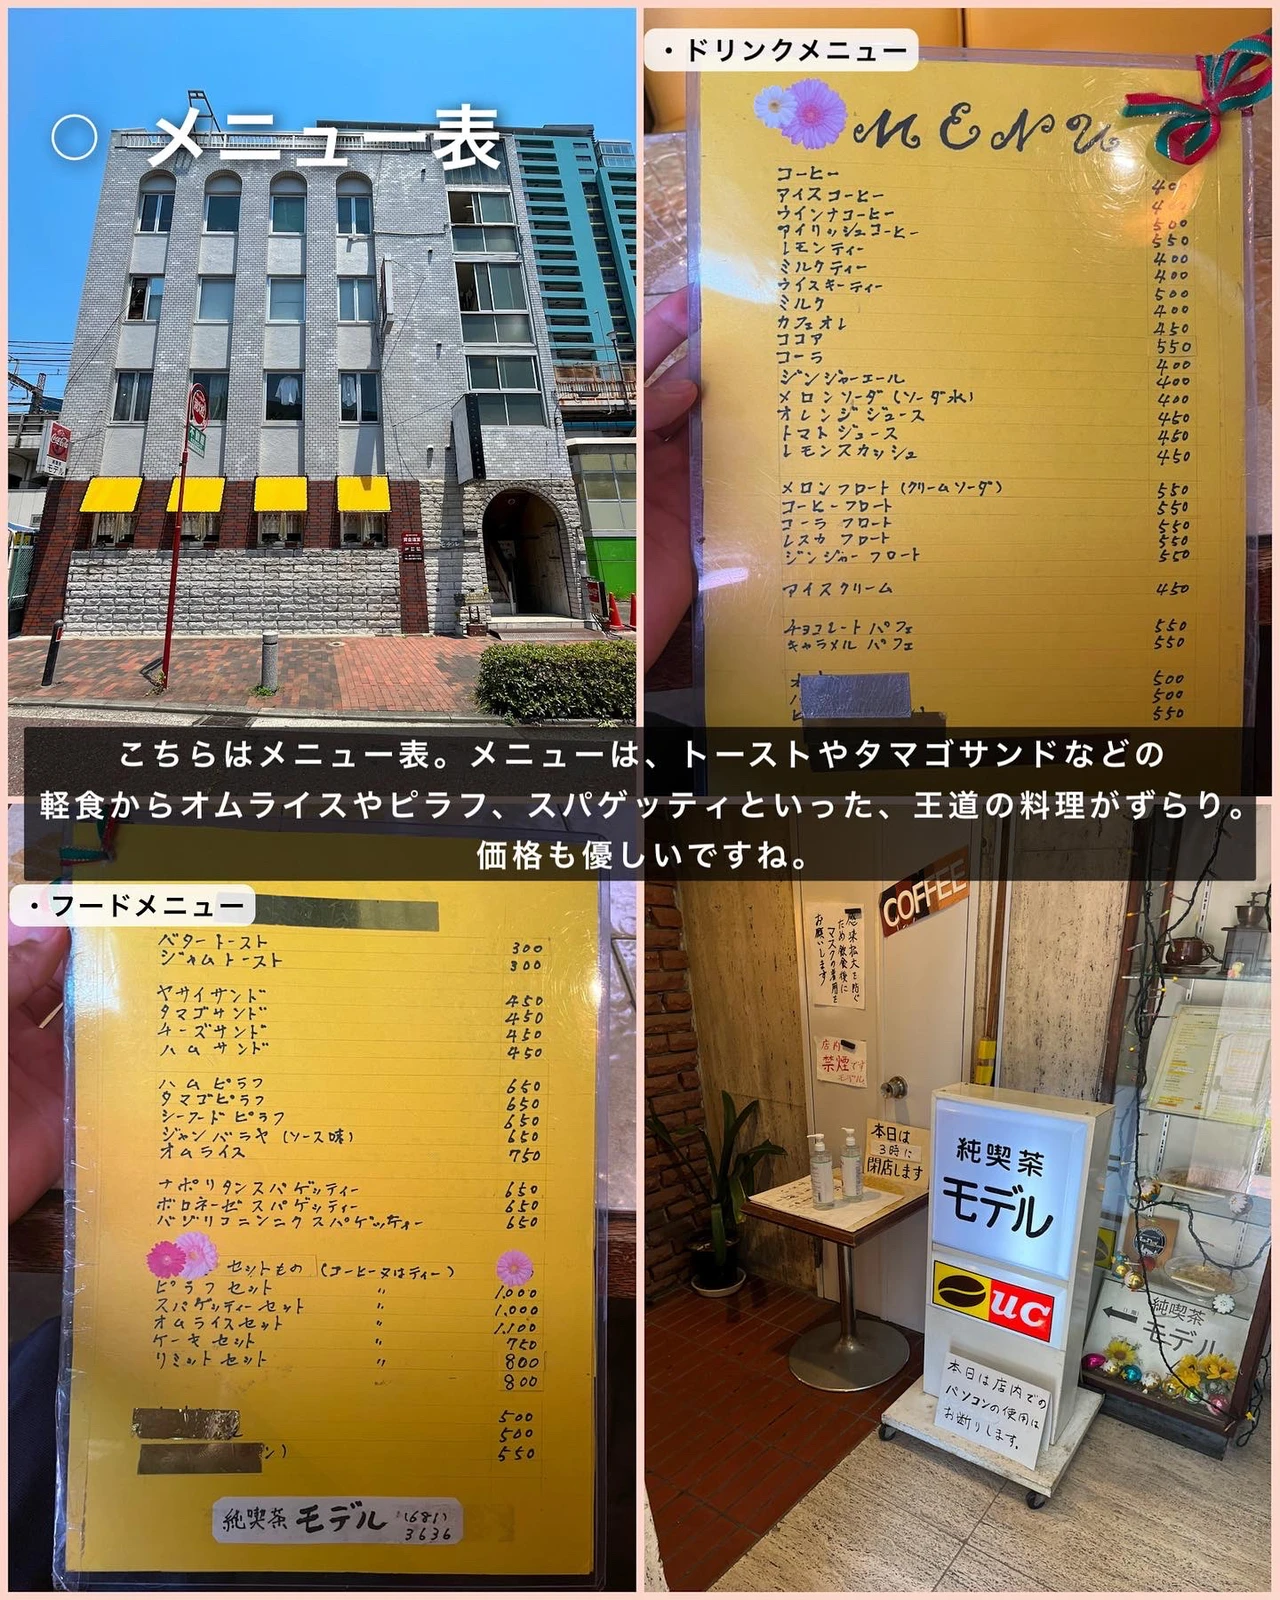 昭和を漂わせる レトロな純喫茶 ゆき カフェ巡り 東京 神奈川が投稿したフォトブック Lemon8